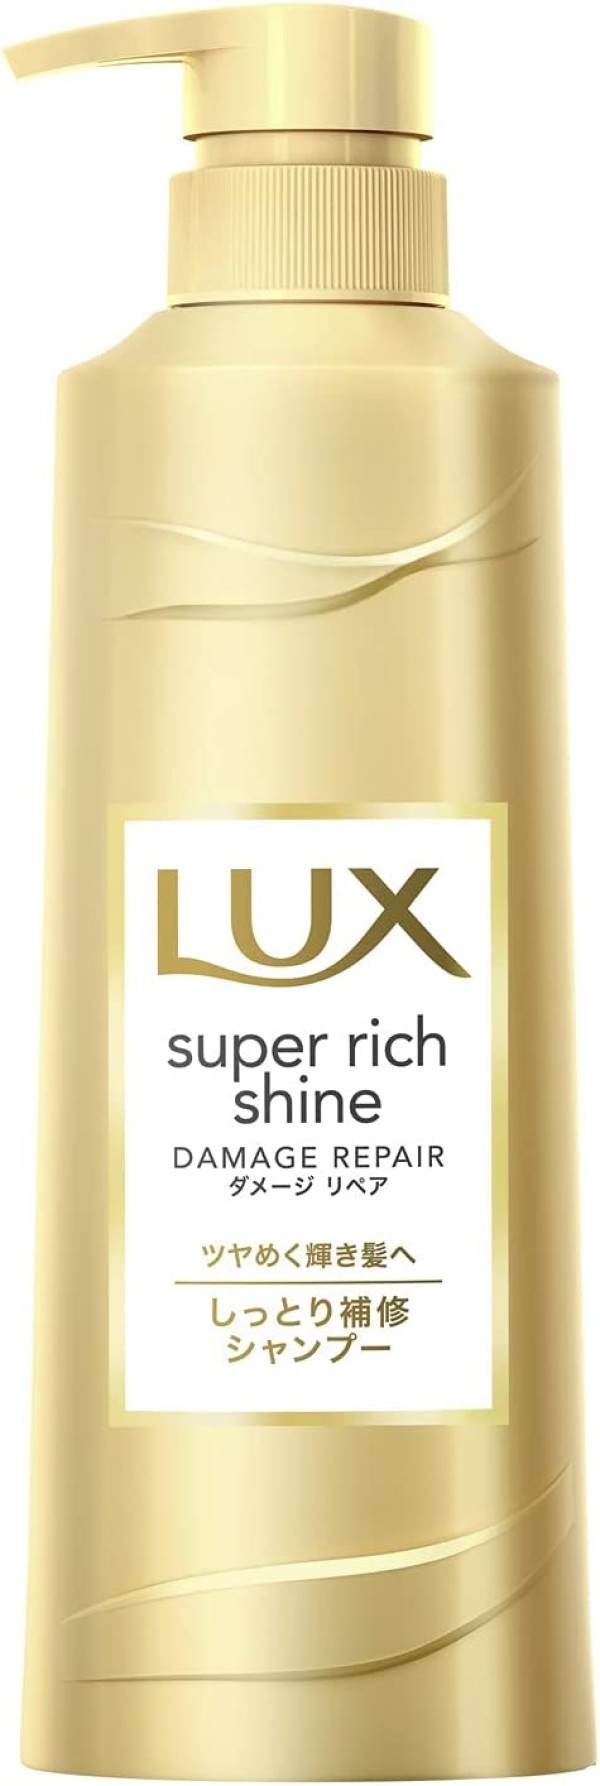 Восстанавливающий шампунь для поврежденных волос LUX Super Rich Shine Damage Repair Shampoo